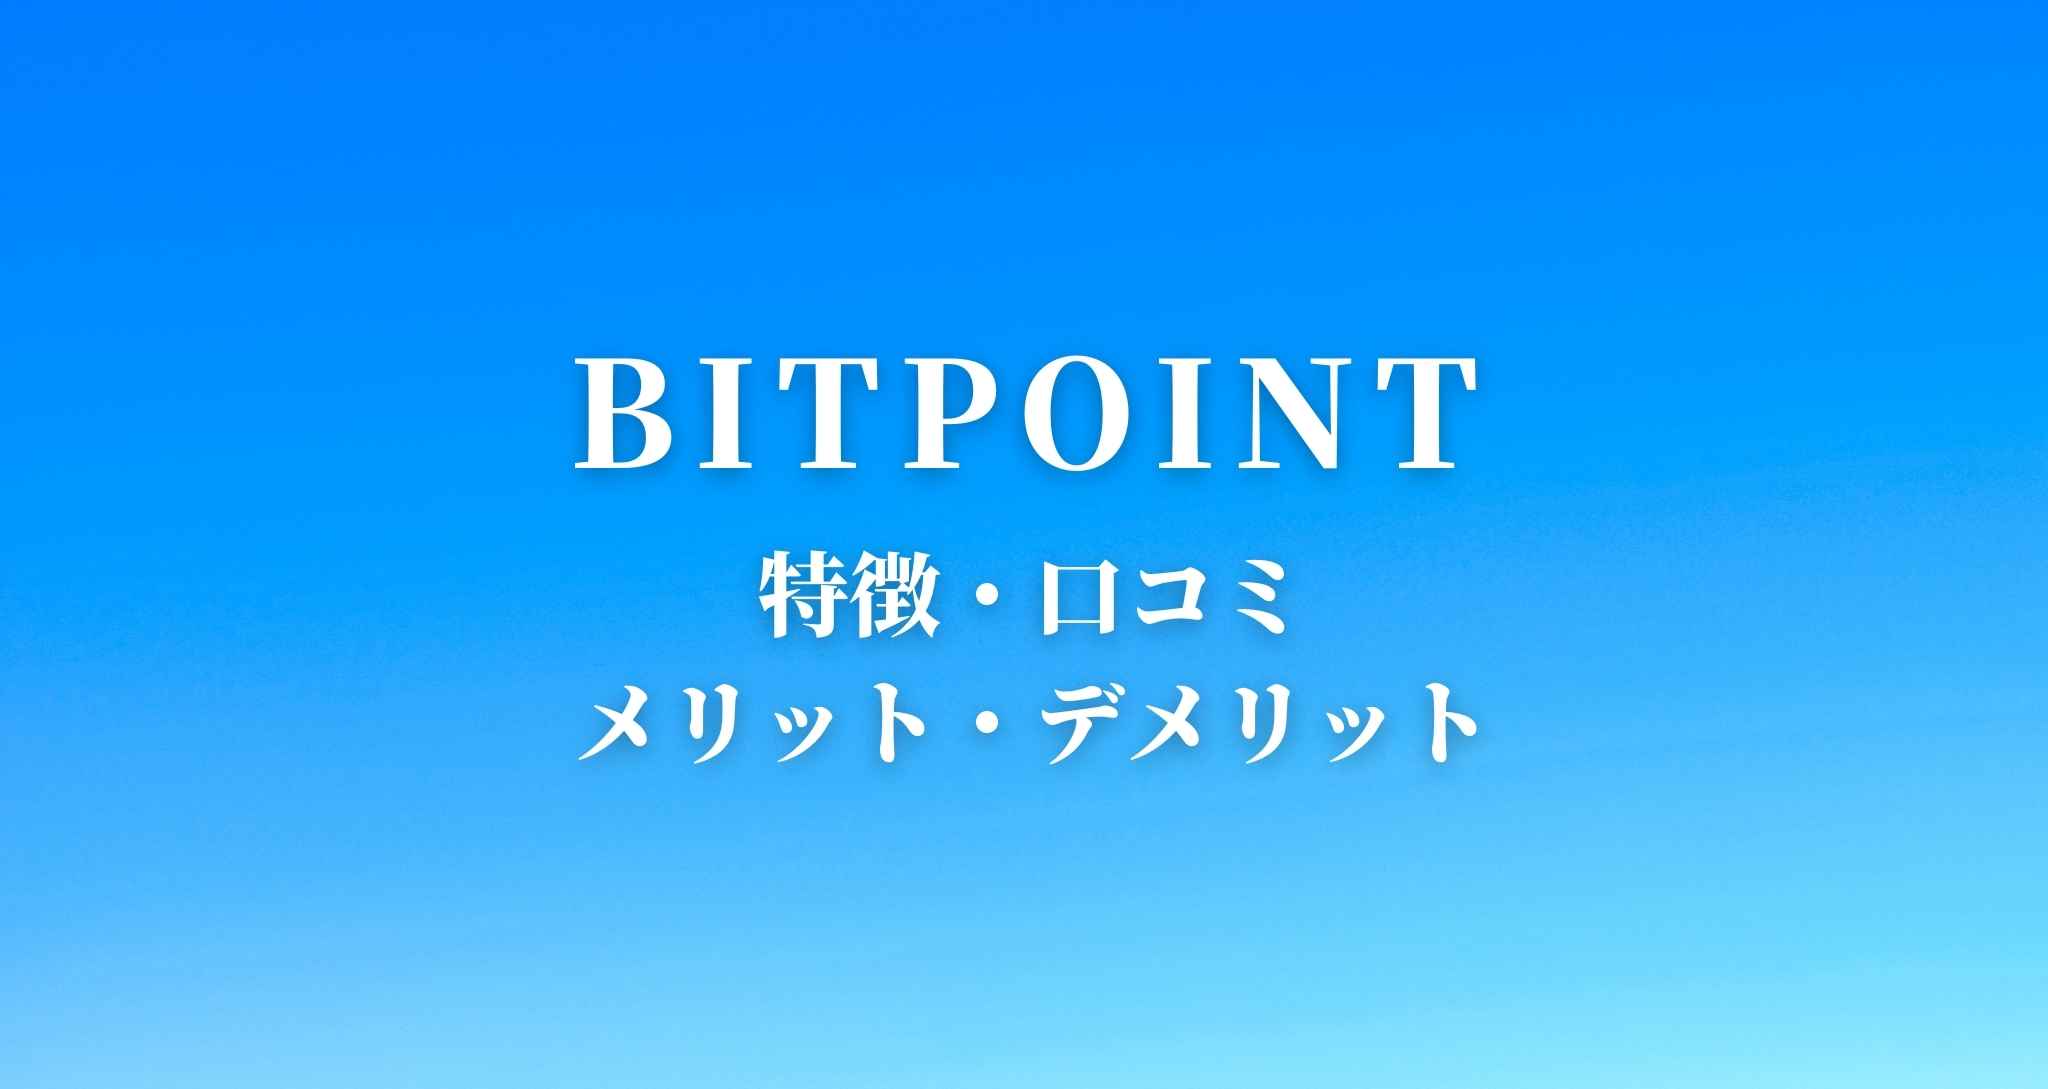 【暗号資産】BITPOINT(ビットポイント)の口コミ・特徴についてまとめてみた